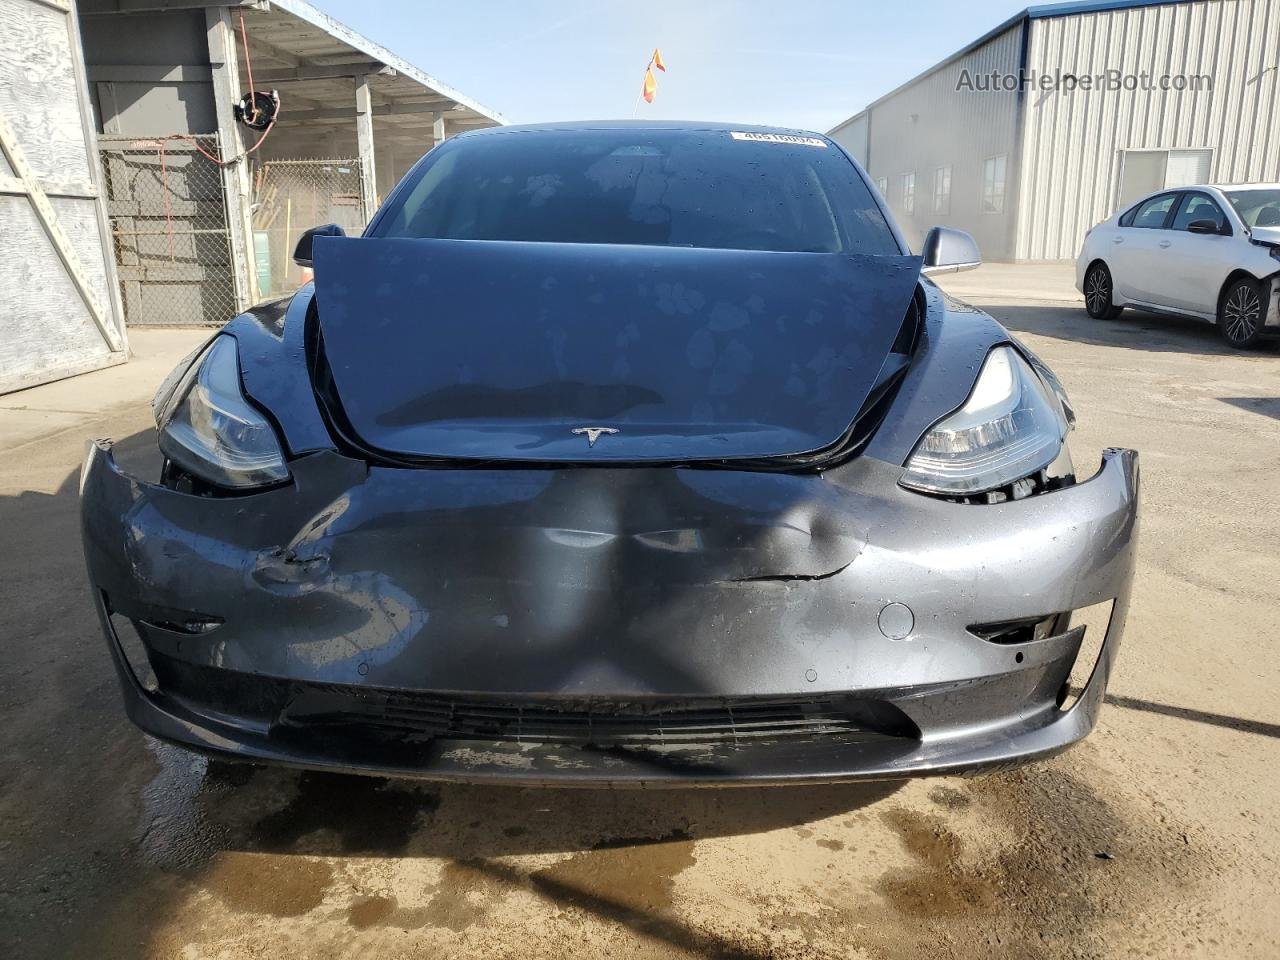 2019 Tesla Model 3  Серый vin: 5YJ3E1EA5KF464251